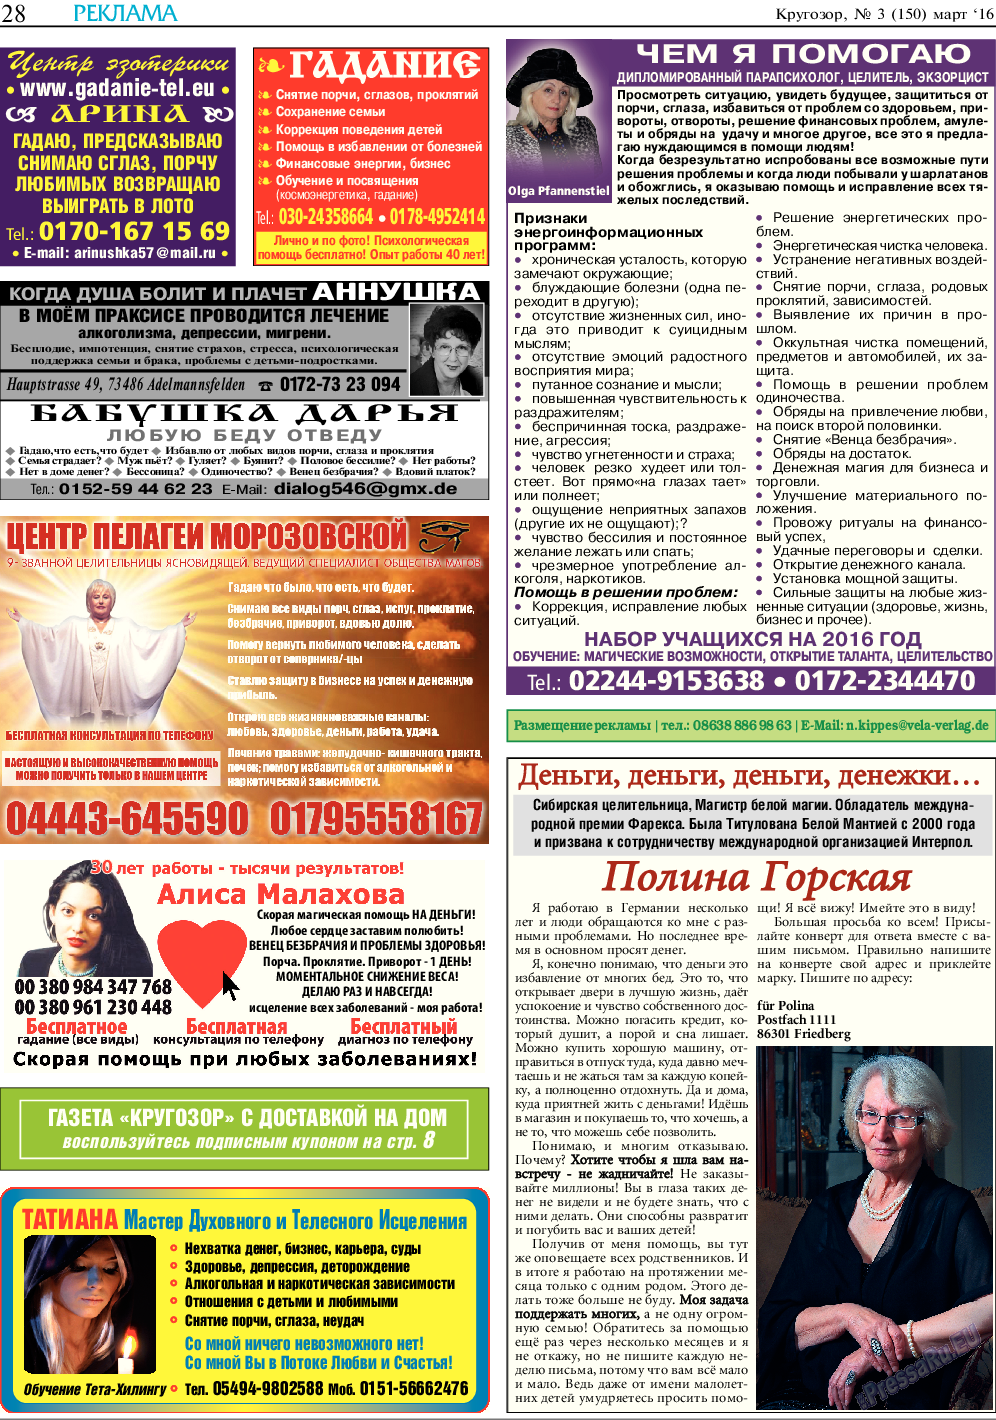 Кругозор, газета. 2016 №3 стр.28